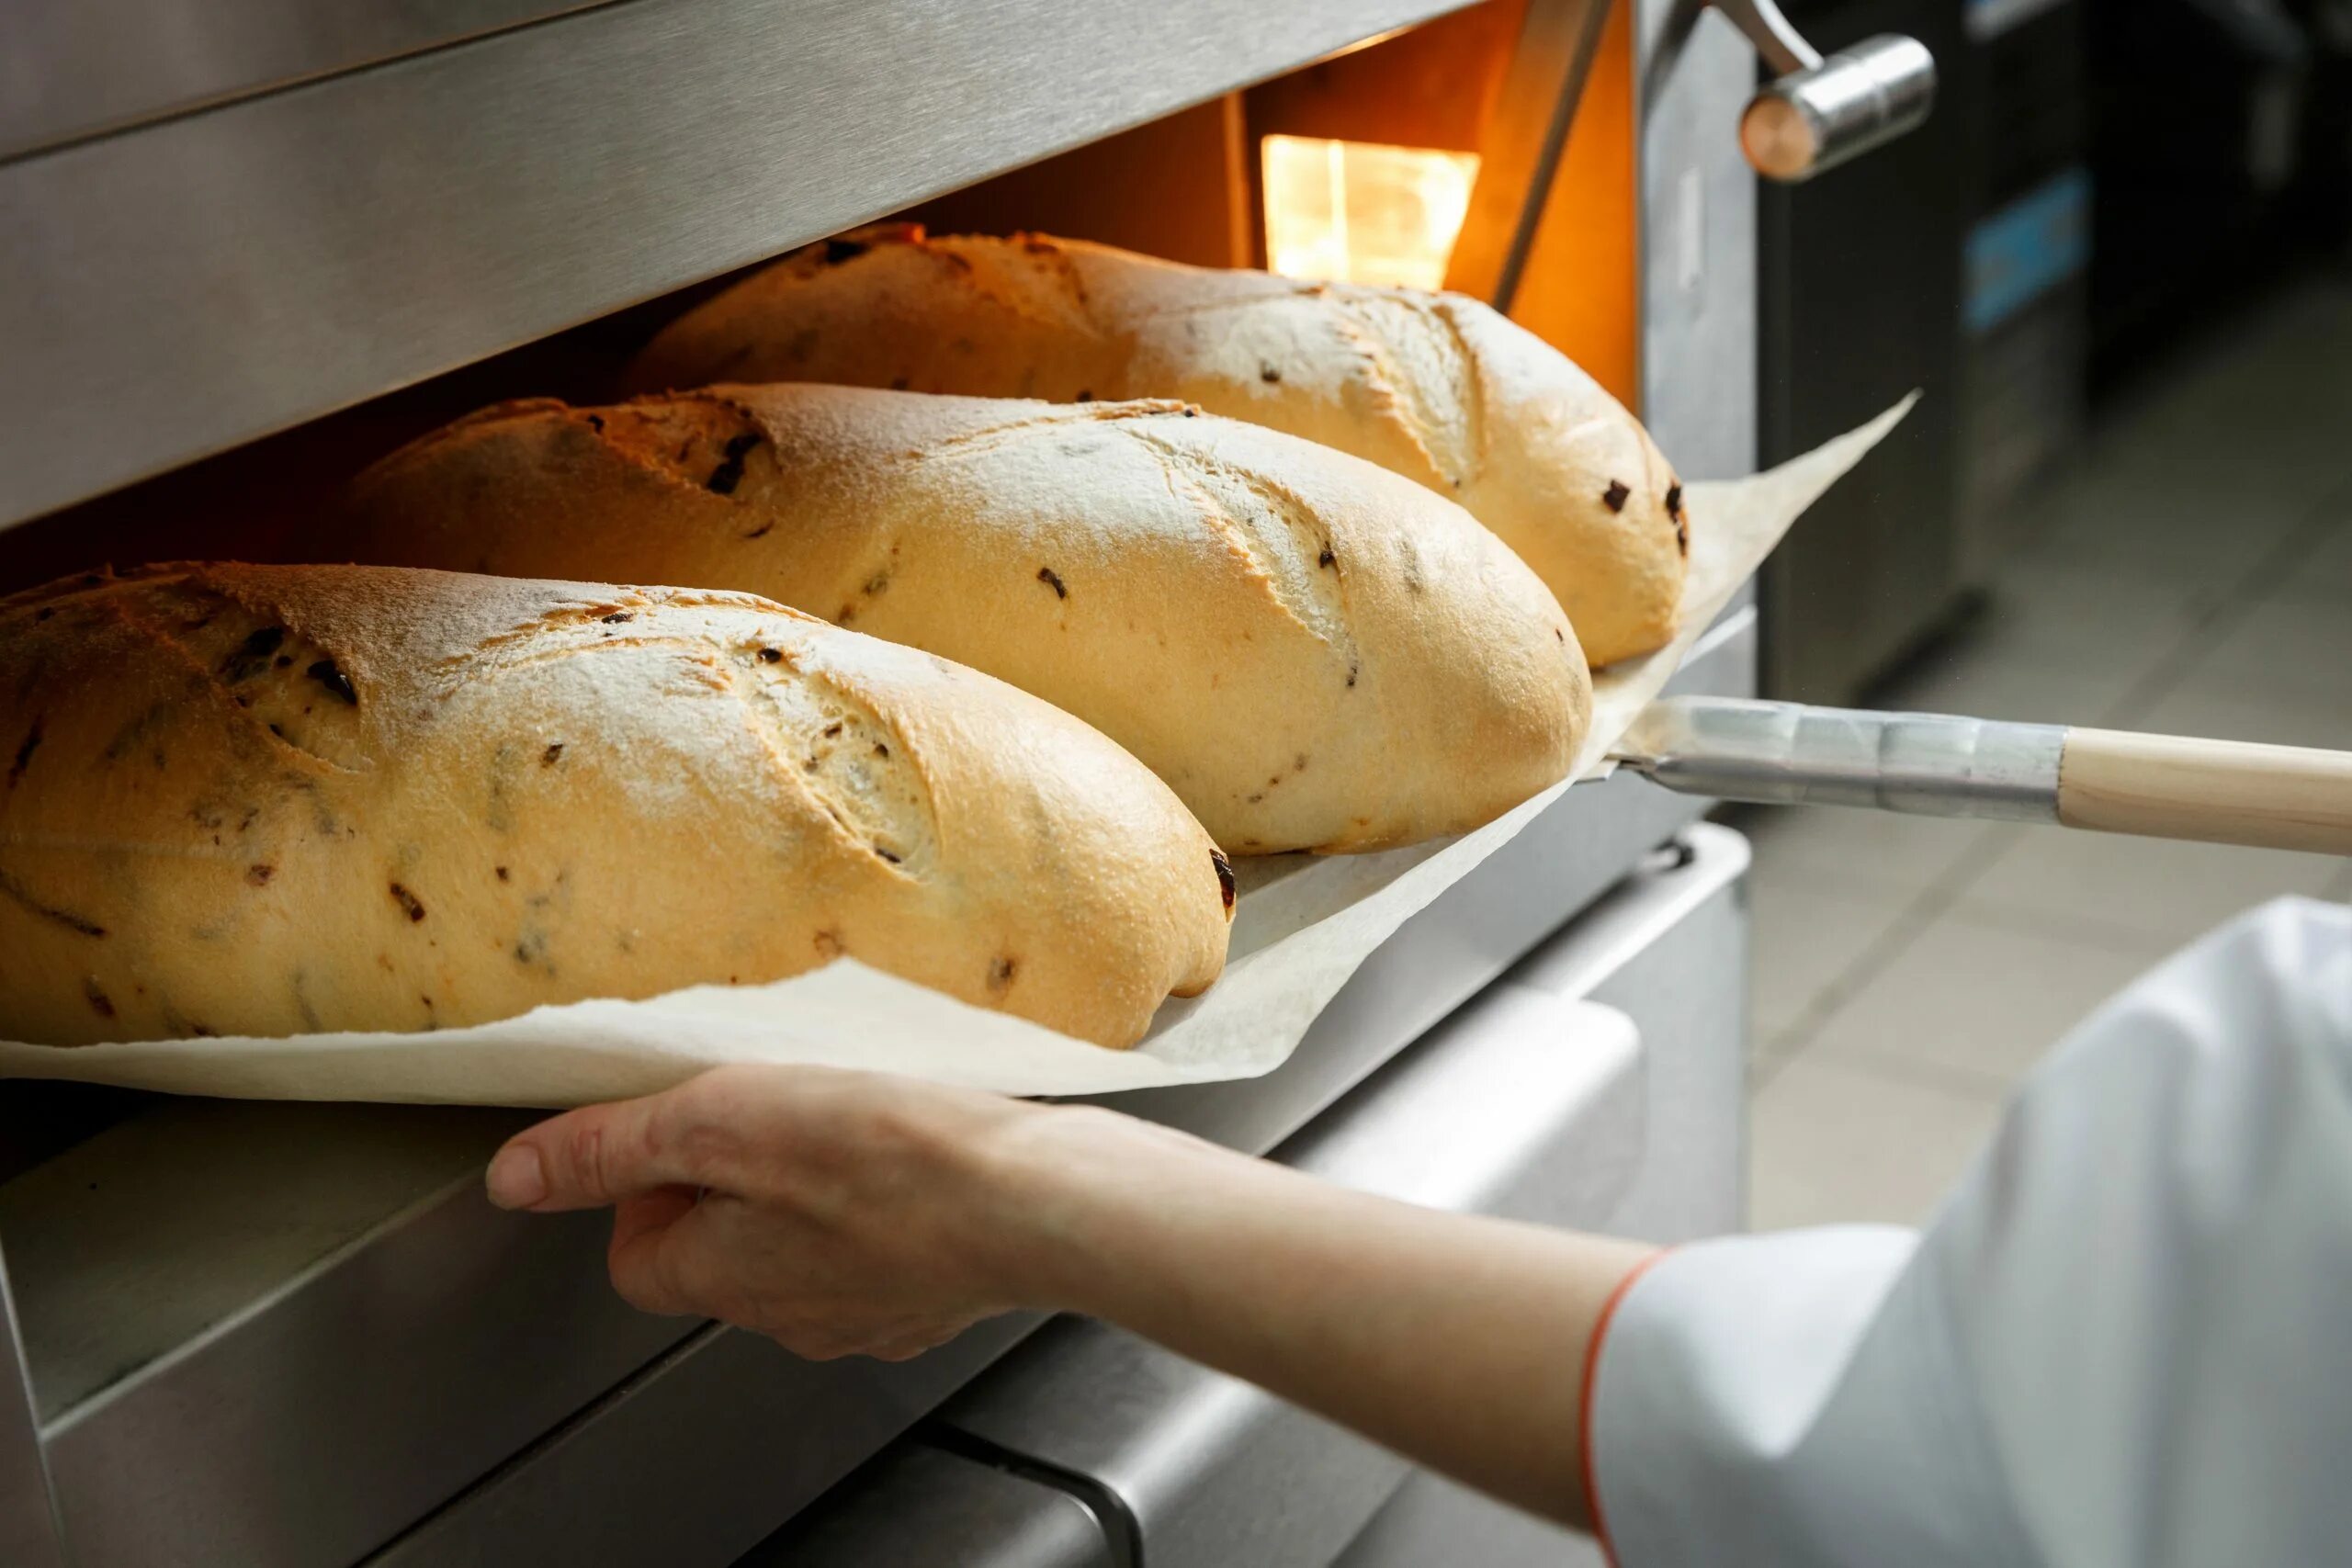 Печь хлеб в форме. Хлеб в печи. Выпекание хлеба. Хлебопекарное производство. Хлеб печется.